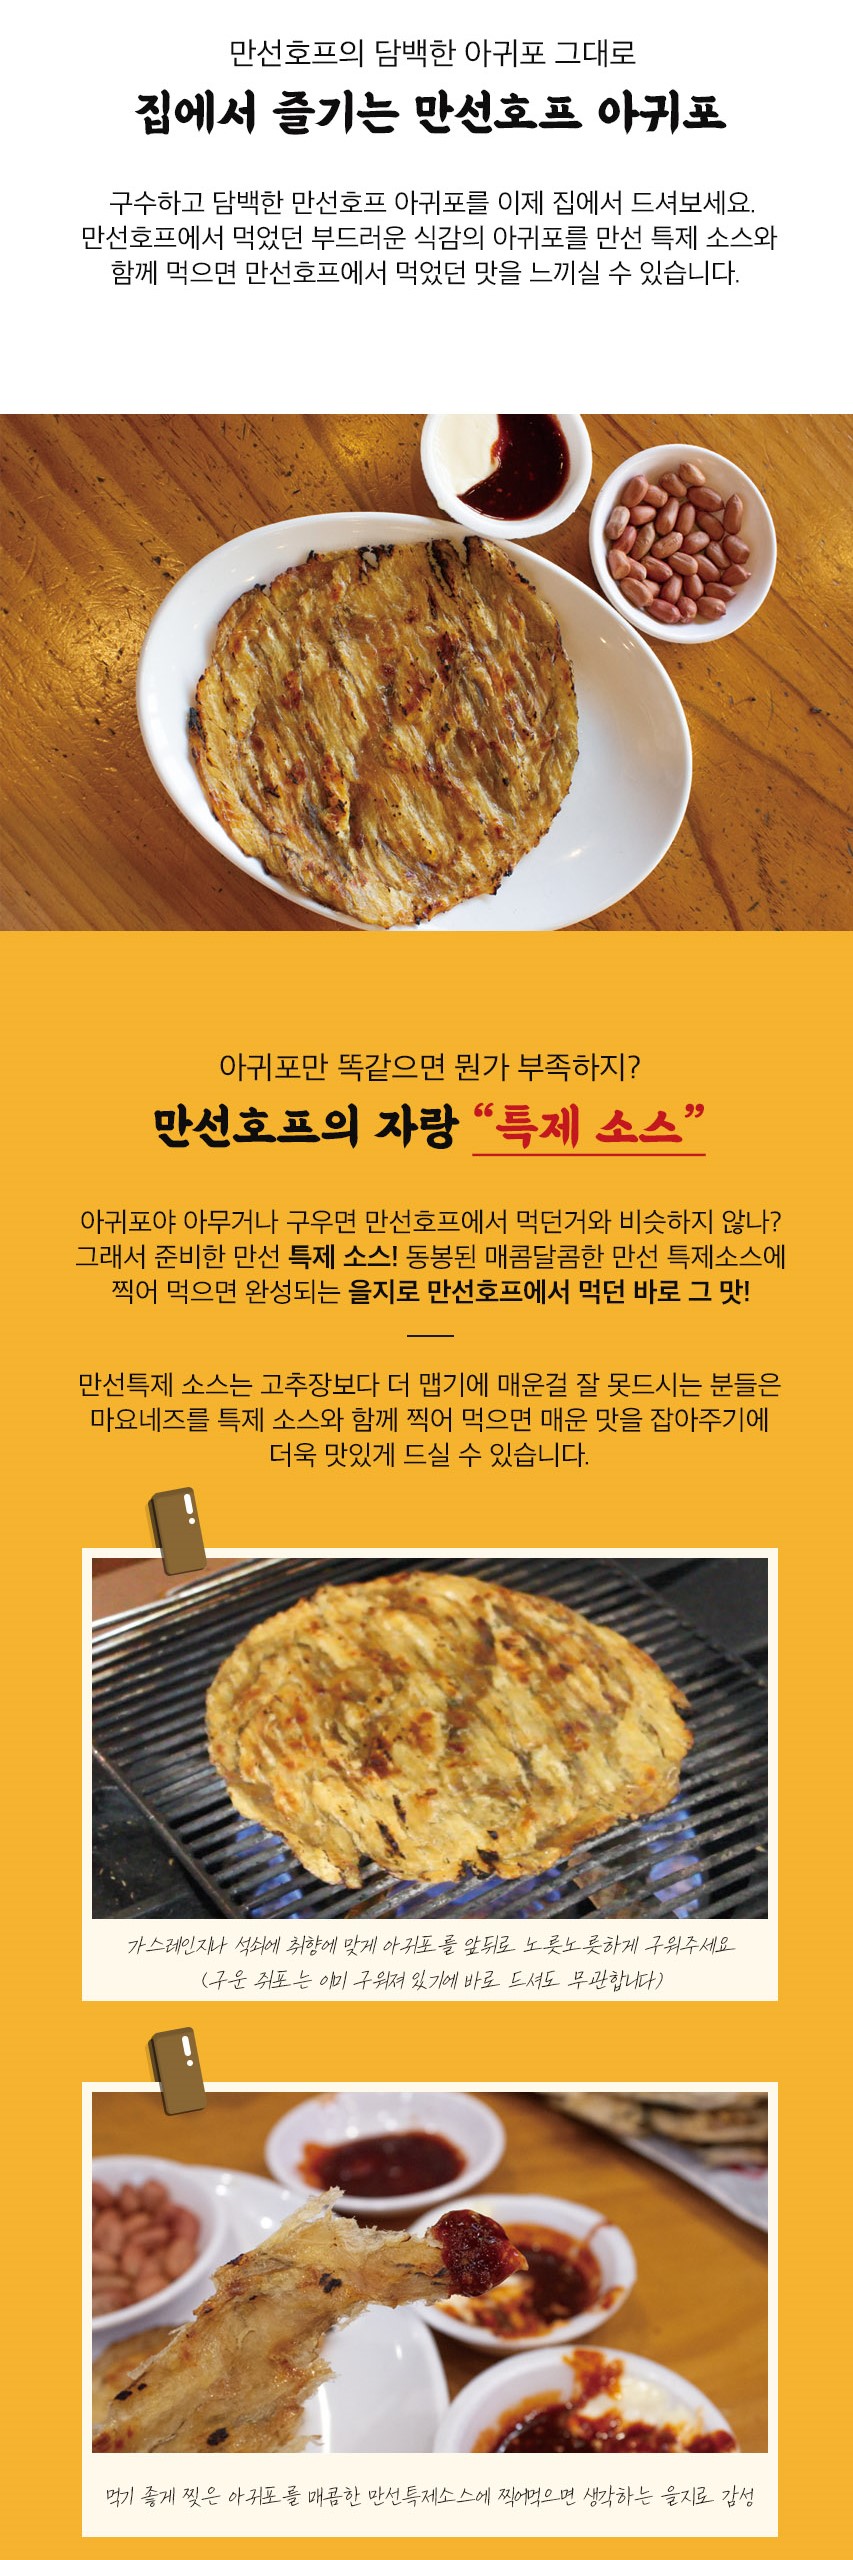 韓國食品-[만선호프] 을지로 구운아귀포 260g